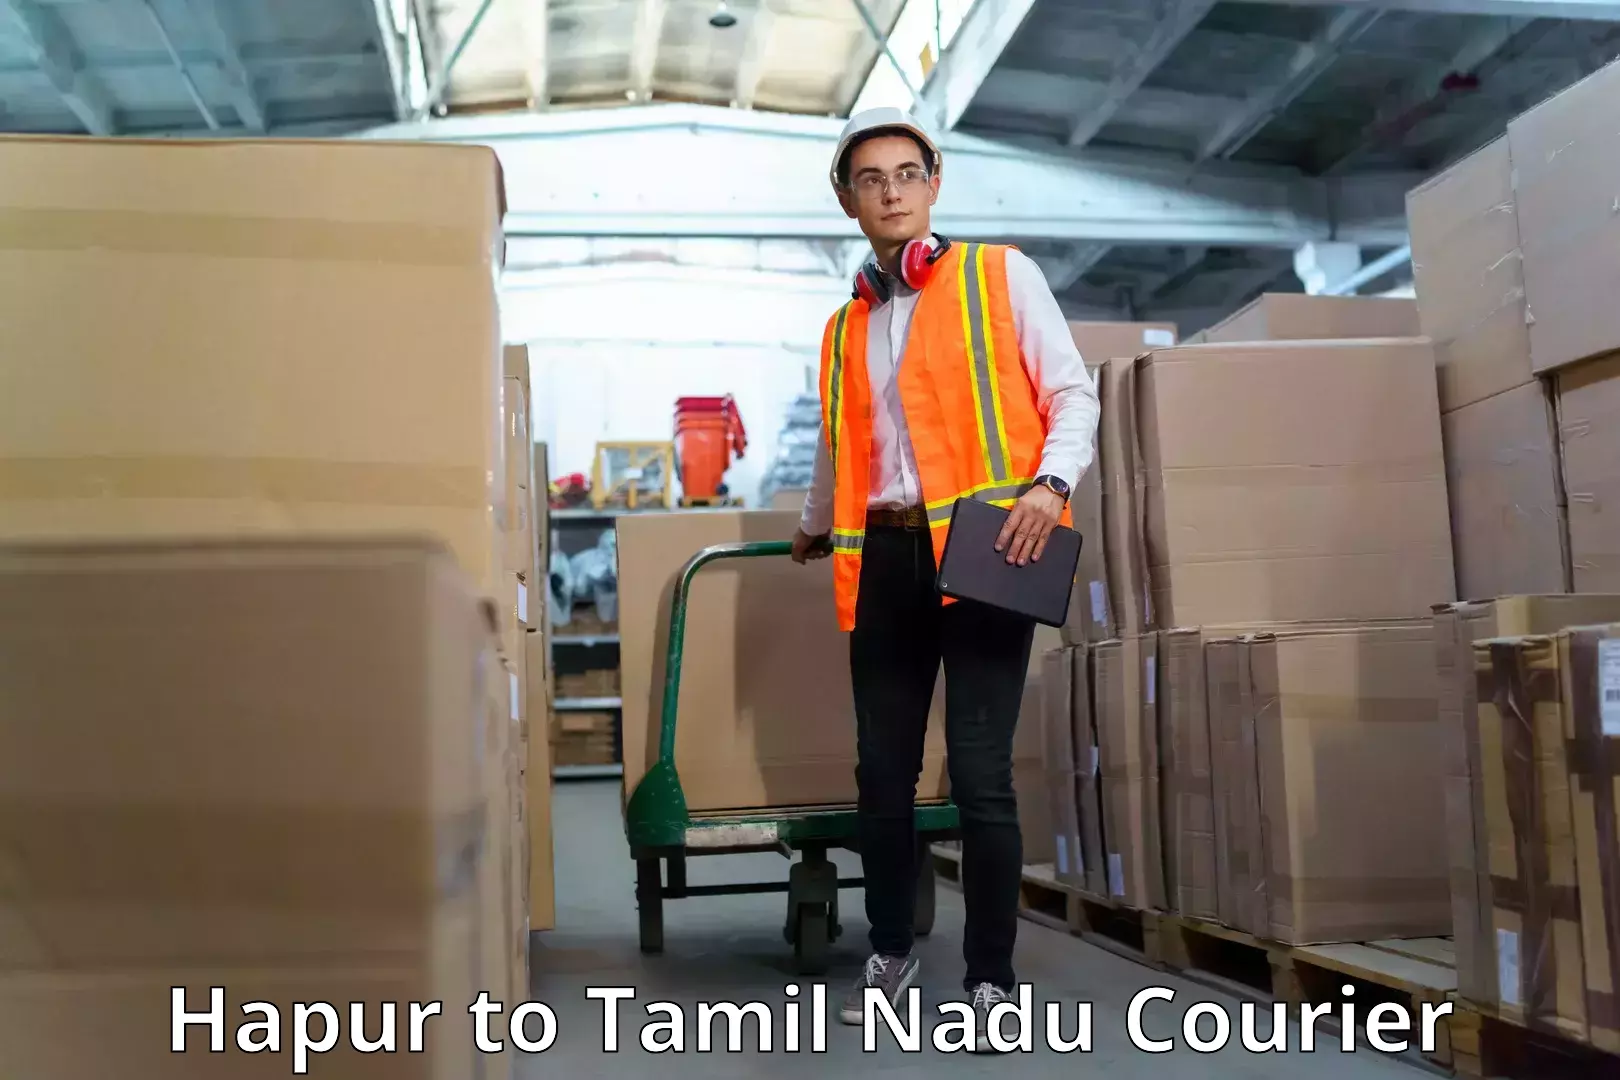 Lightweight courier Hapur to Tamil Nadu